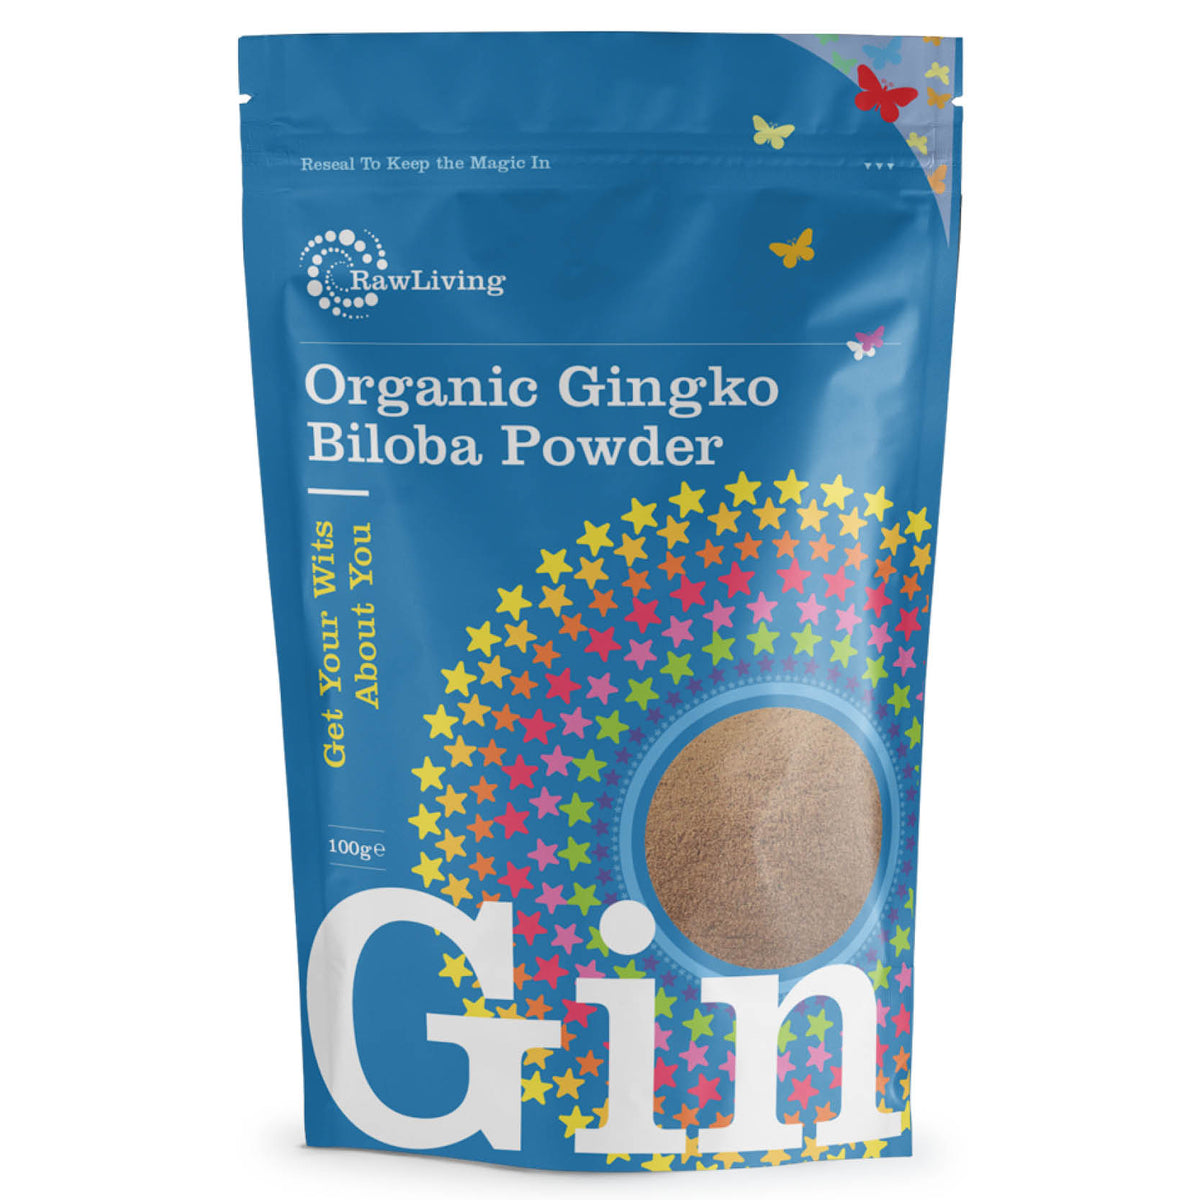 Gingko Biloba powder - Organic (100g, 250g, 1kg)